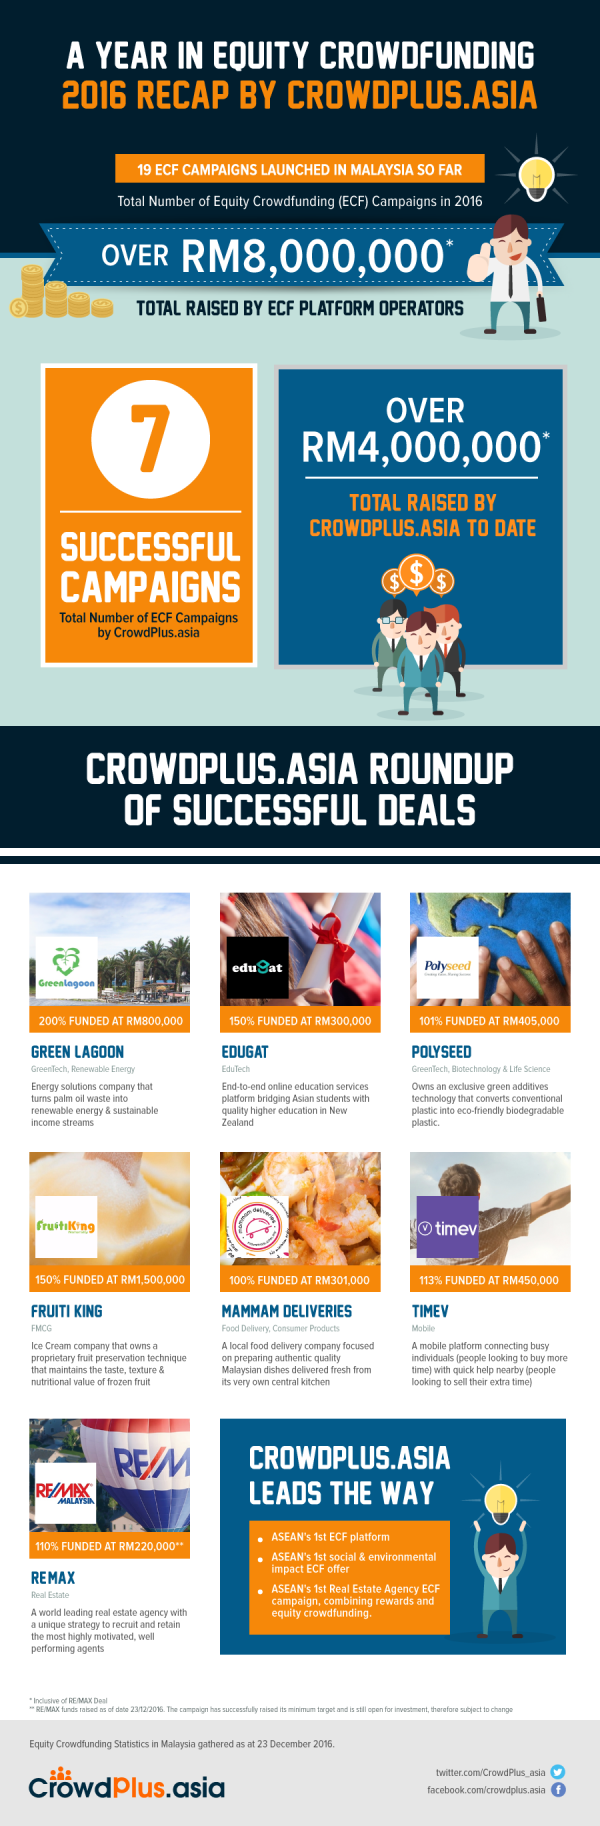 CrowdPlus.asia 2016 Recap Infographic e1484207165257